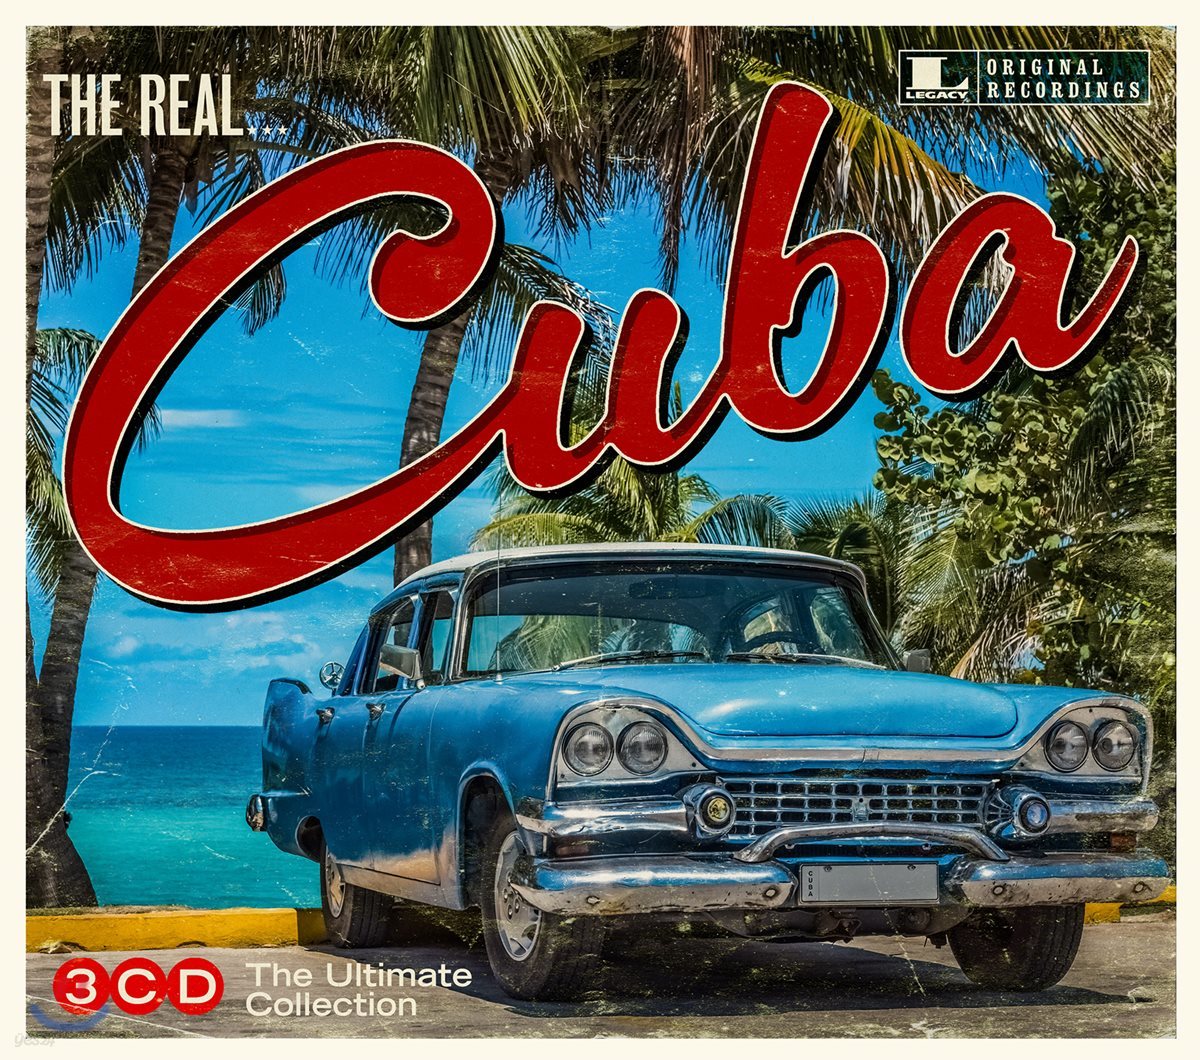 쿠바 음악 모음집 (The Ultimate Cuba Collection: The Real... Cuba)